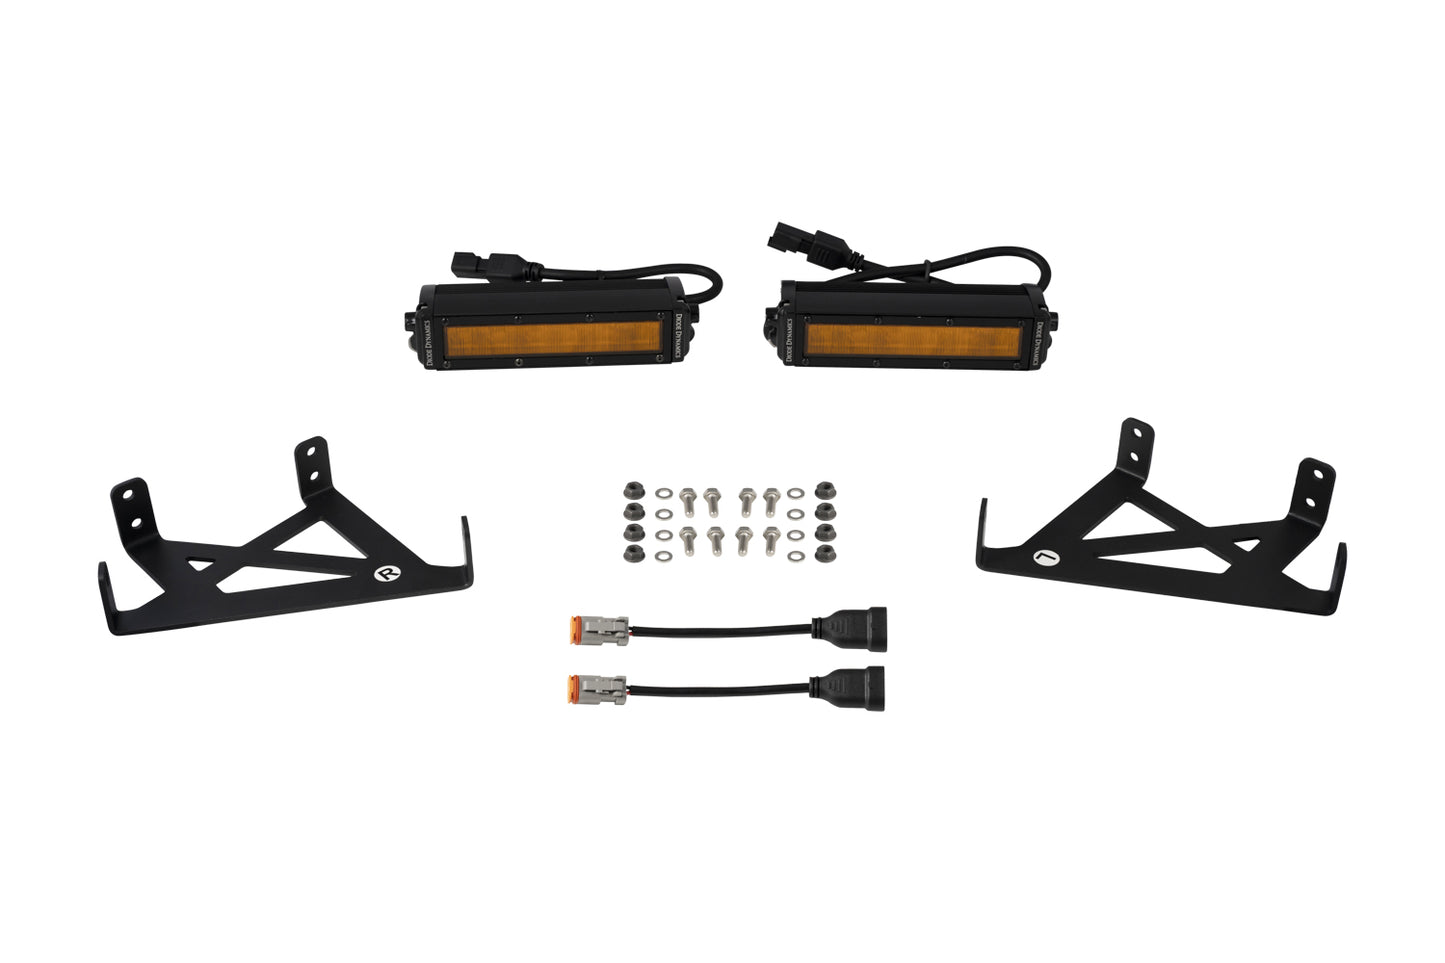 SS6 LED Fog Light Kit for 2020+ Ford Super Duty